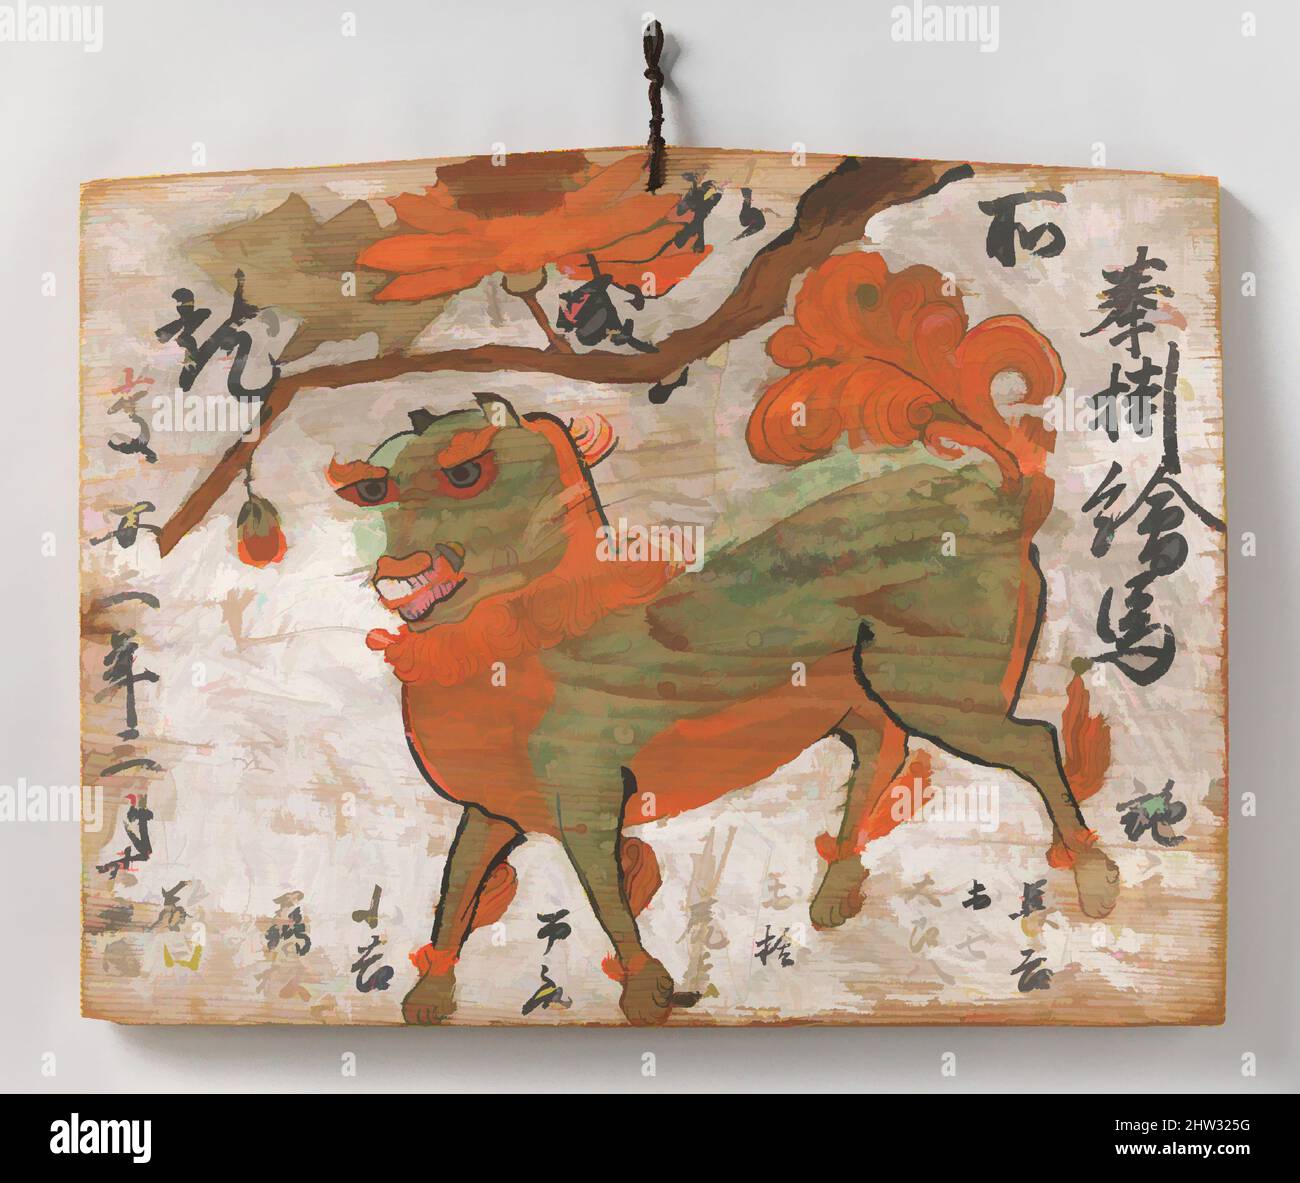 Art inspiré par 牡丹に唐獅子図絵馬 「奉掛絵馬慶 安二年三月廿五日」, EMA (Votive Painting) de Lion chinois et d'arbre de pivoine, époque Edo (1615–1868), 1649, Japon, encre et couleur sur bois, 16 15/16 x 21 3/4 po. (43 x 55,3 cm), peintures, cette ema a été donnée par huit personnes, dont les noms courent le long du fond de la, œuvres classiques modernisées par Artotop avec un peu de modernité. Formes, couleur et valeur, impact visuel accrocheur sur l'art émotions par la liberté d'œuvres d'art d'une manière contemporaine. Un message intemporel qui cherche une nouvelle direction créative. Artistes qui se tournent vers le support numérique et créent le NFT Artotop Banque D'Images